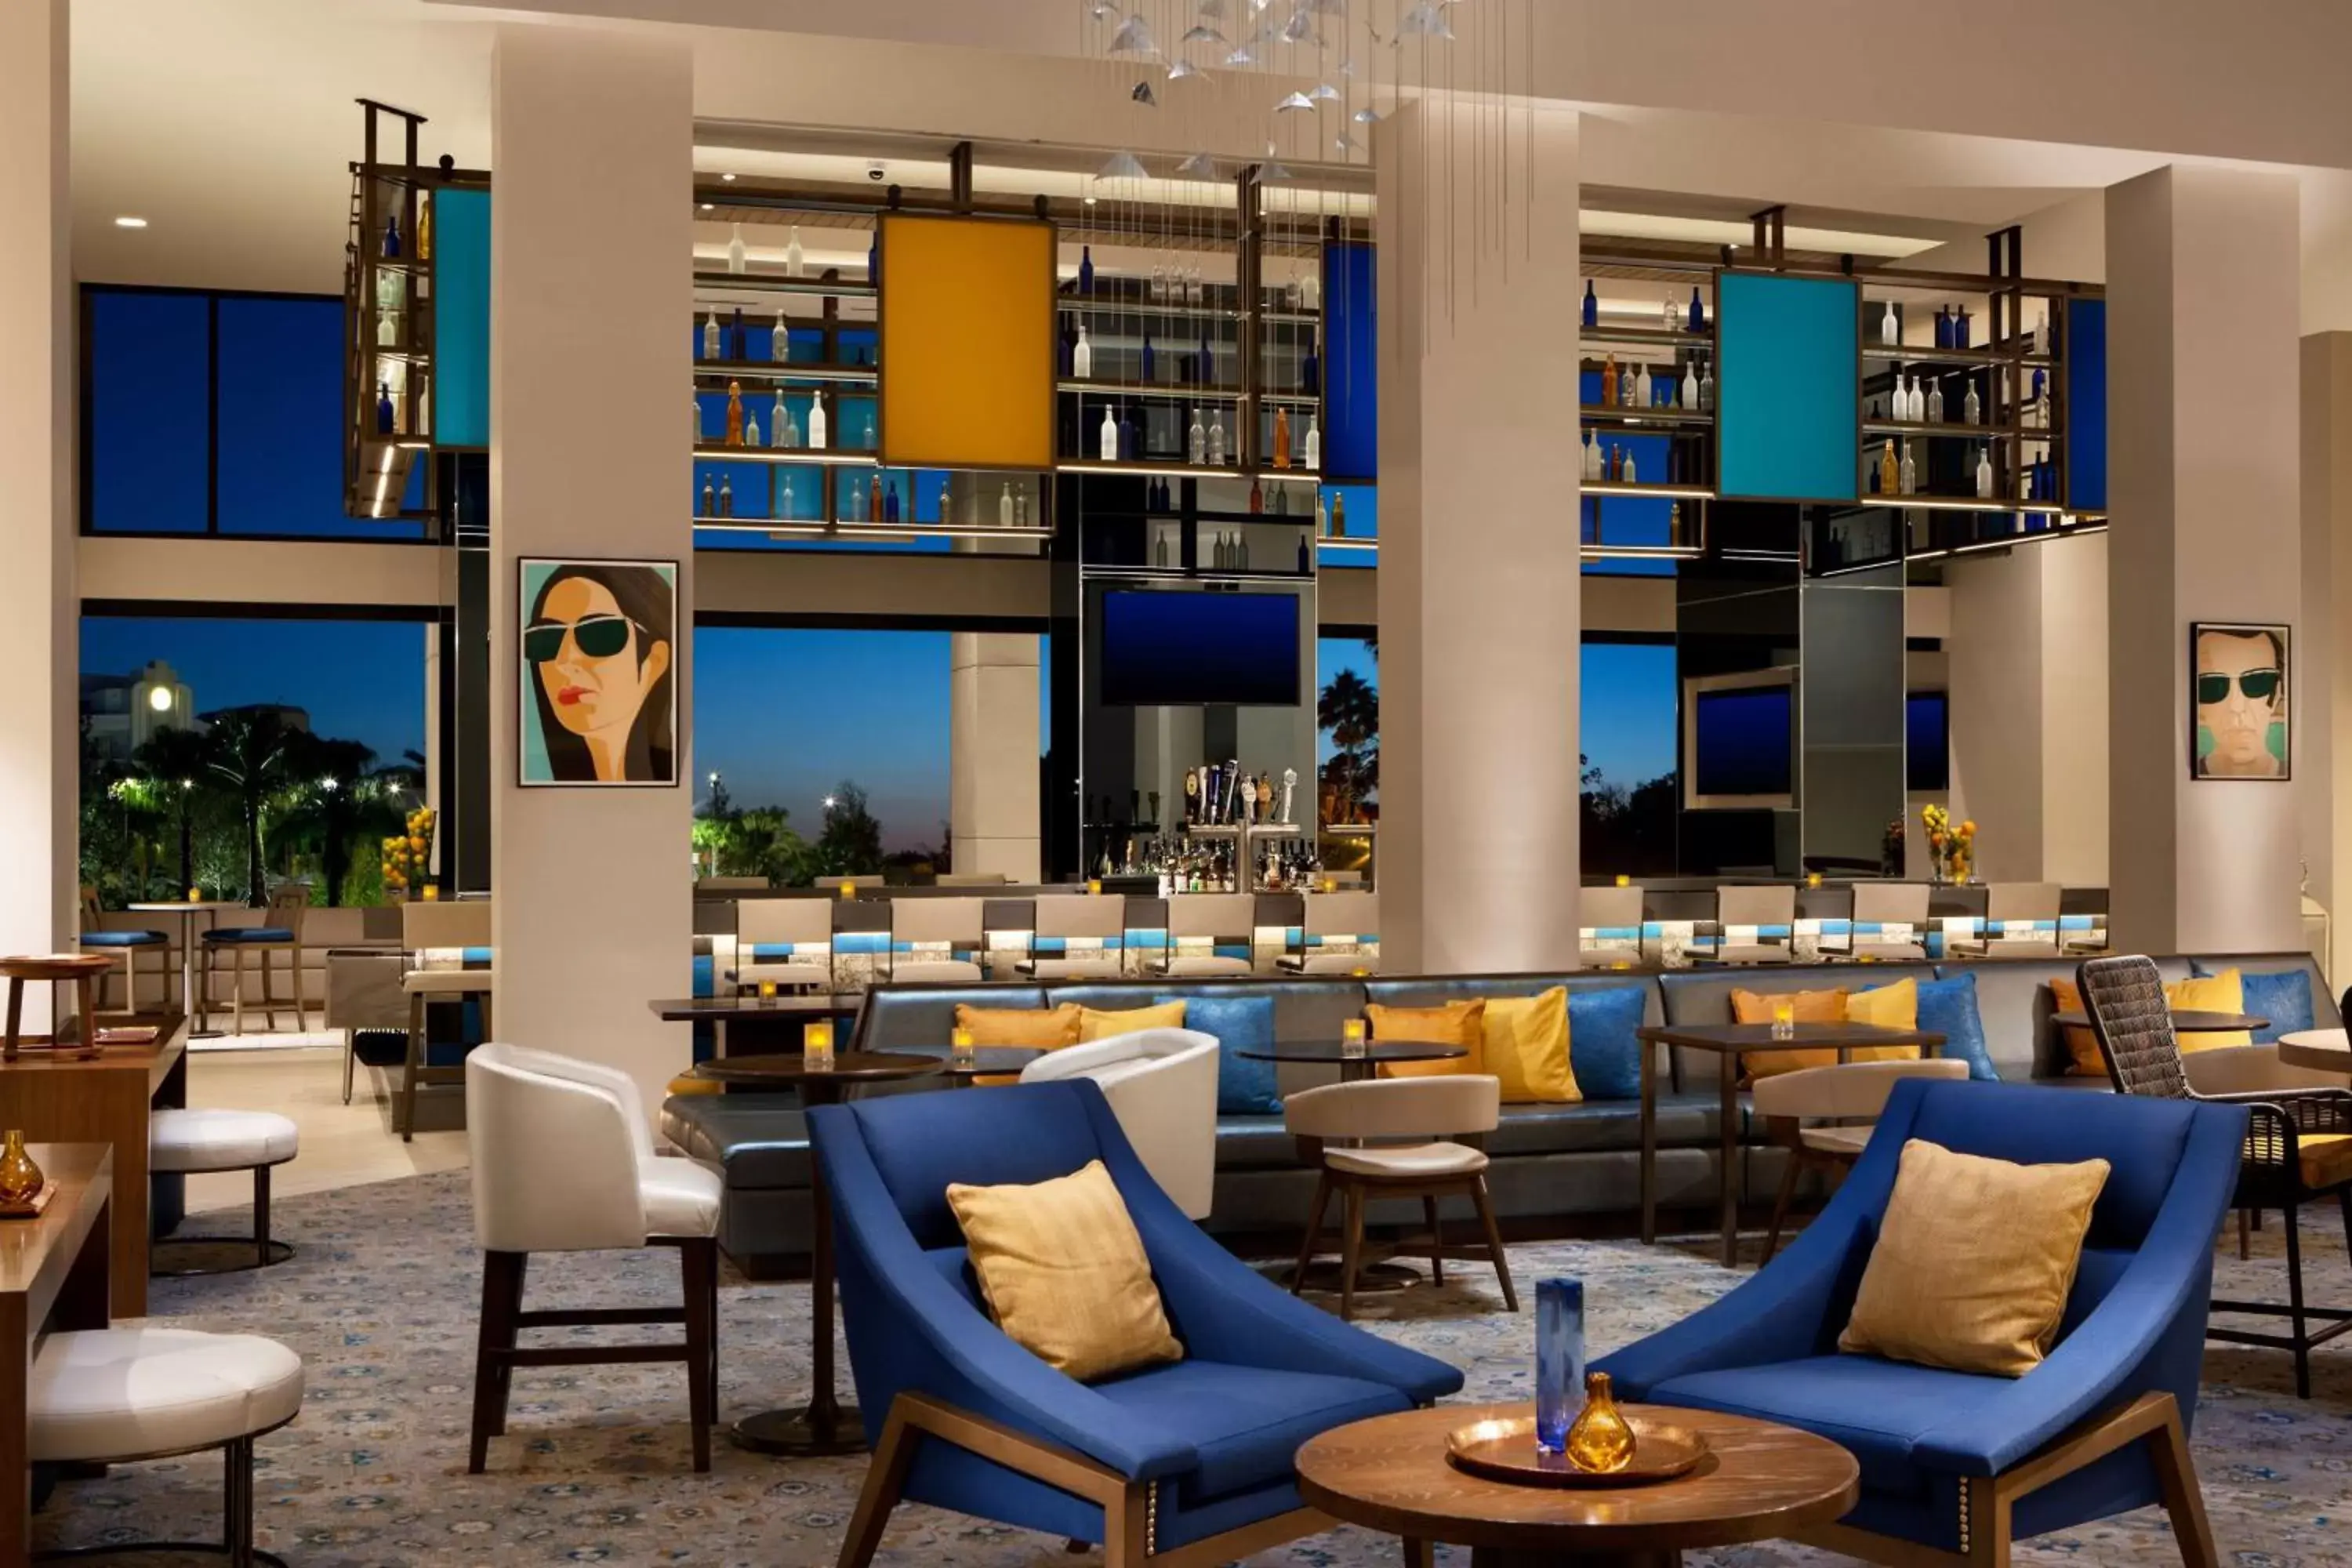 Lobby or reception in Hilton Orlando Buena Vista Palace - Disney Springs Area